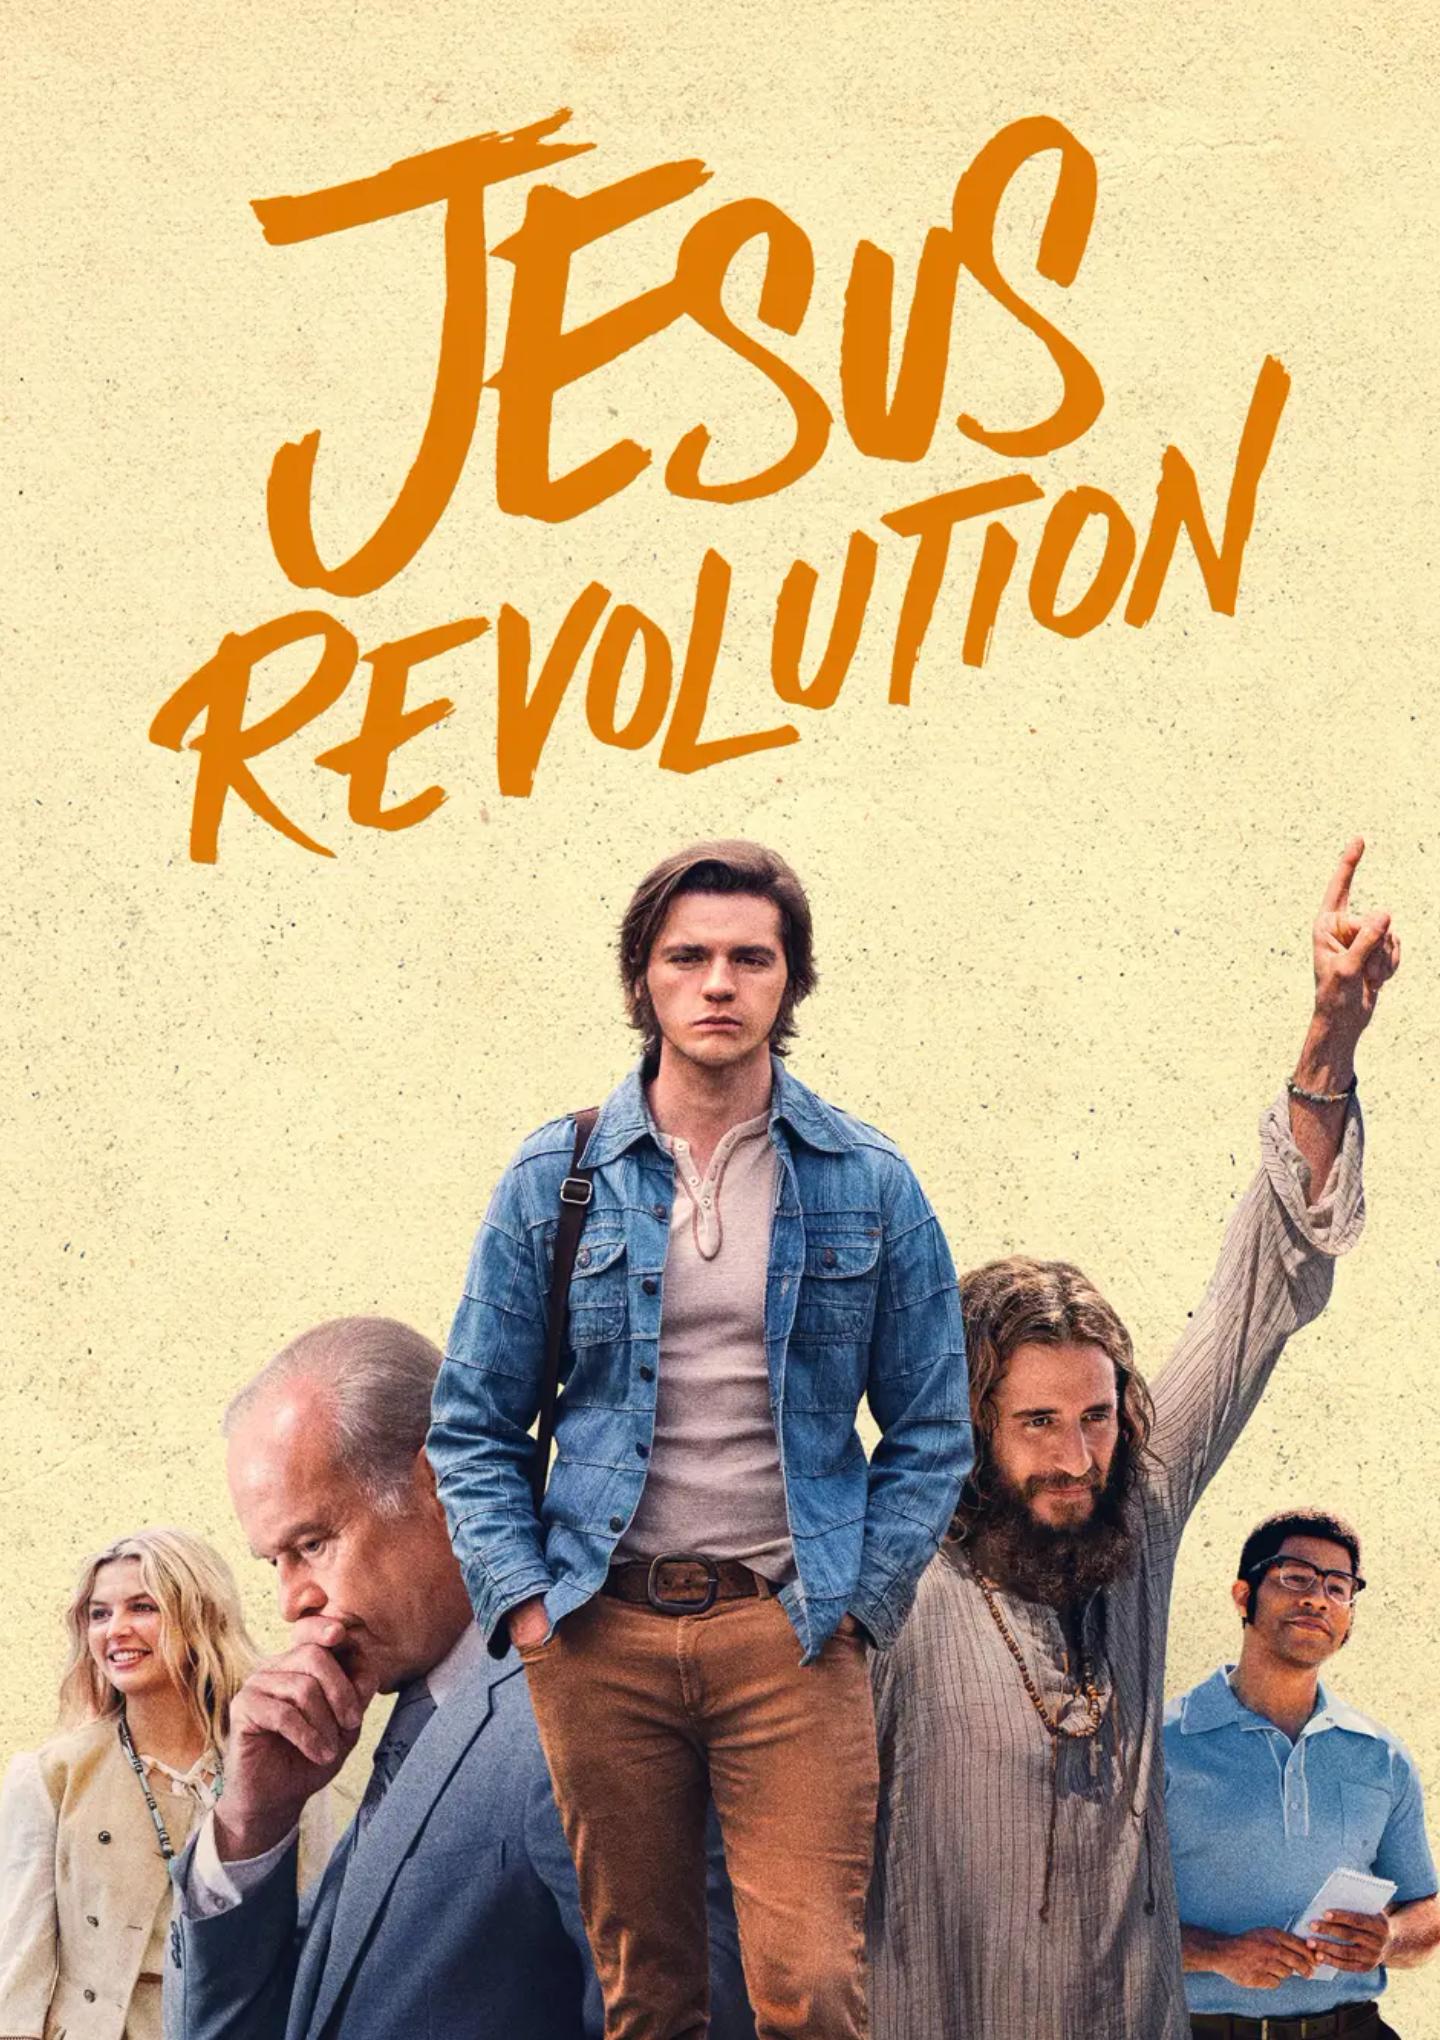 Plakat for 'Jesus Revolution'